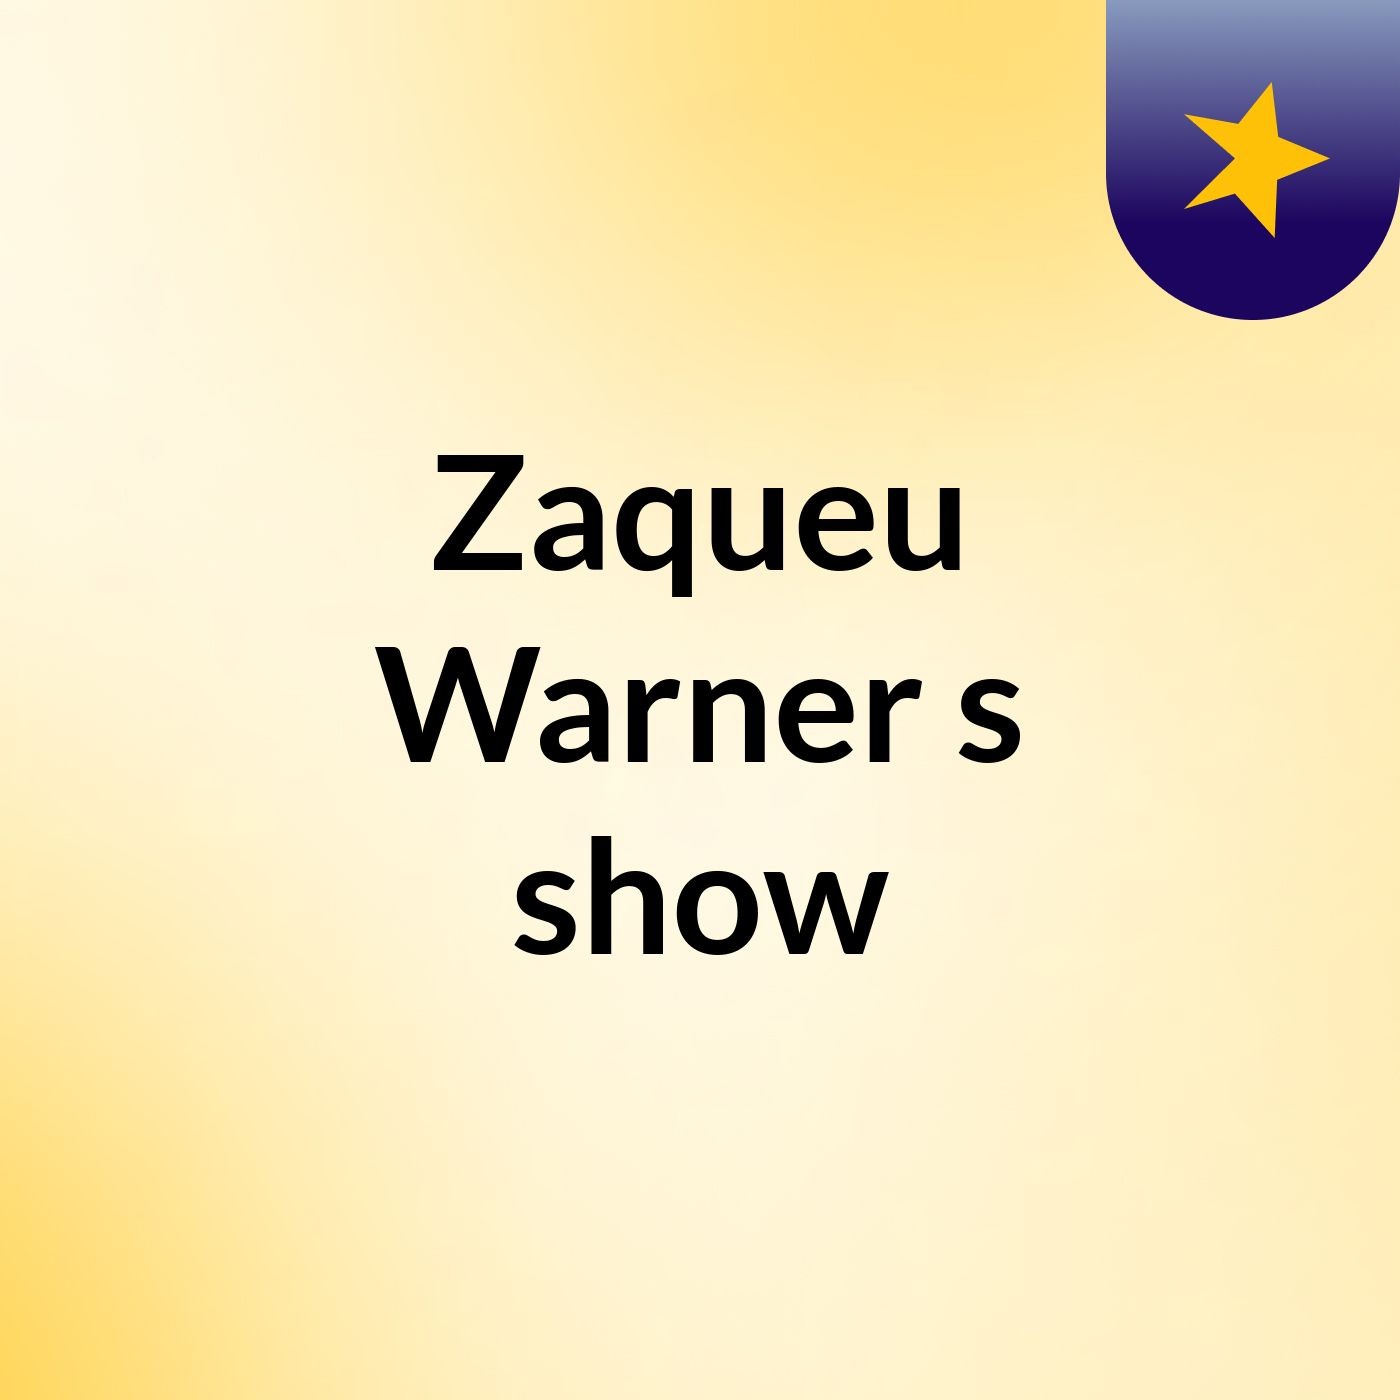 Zaqueu Warner's show